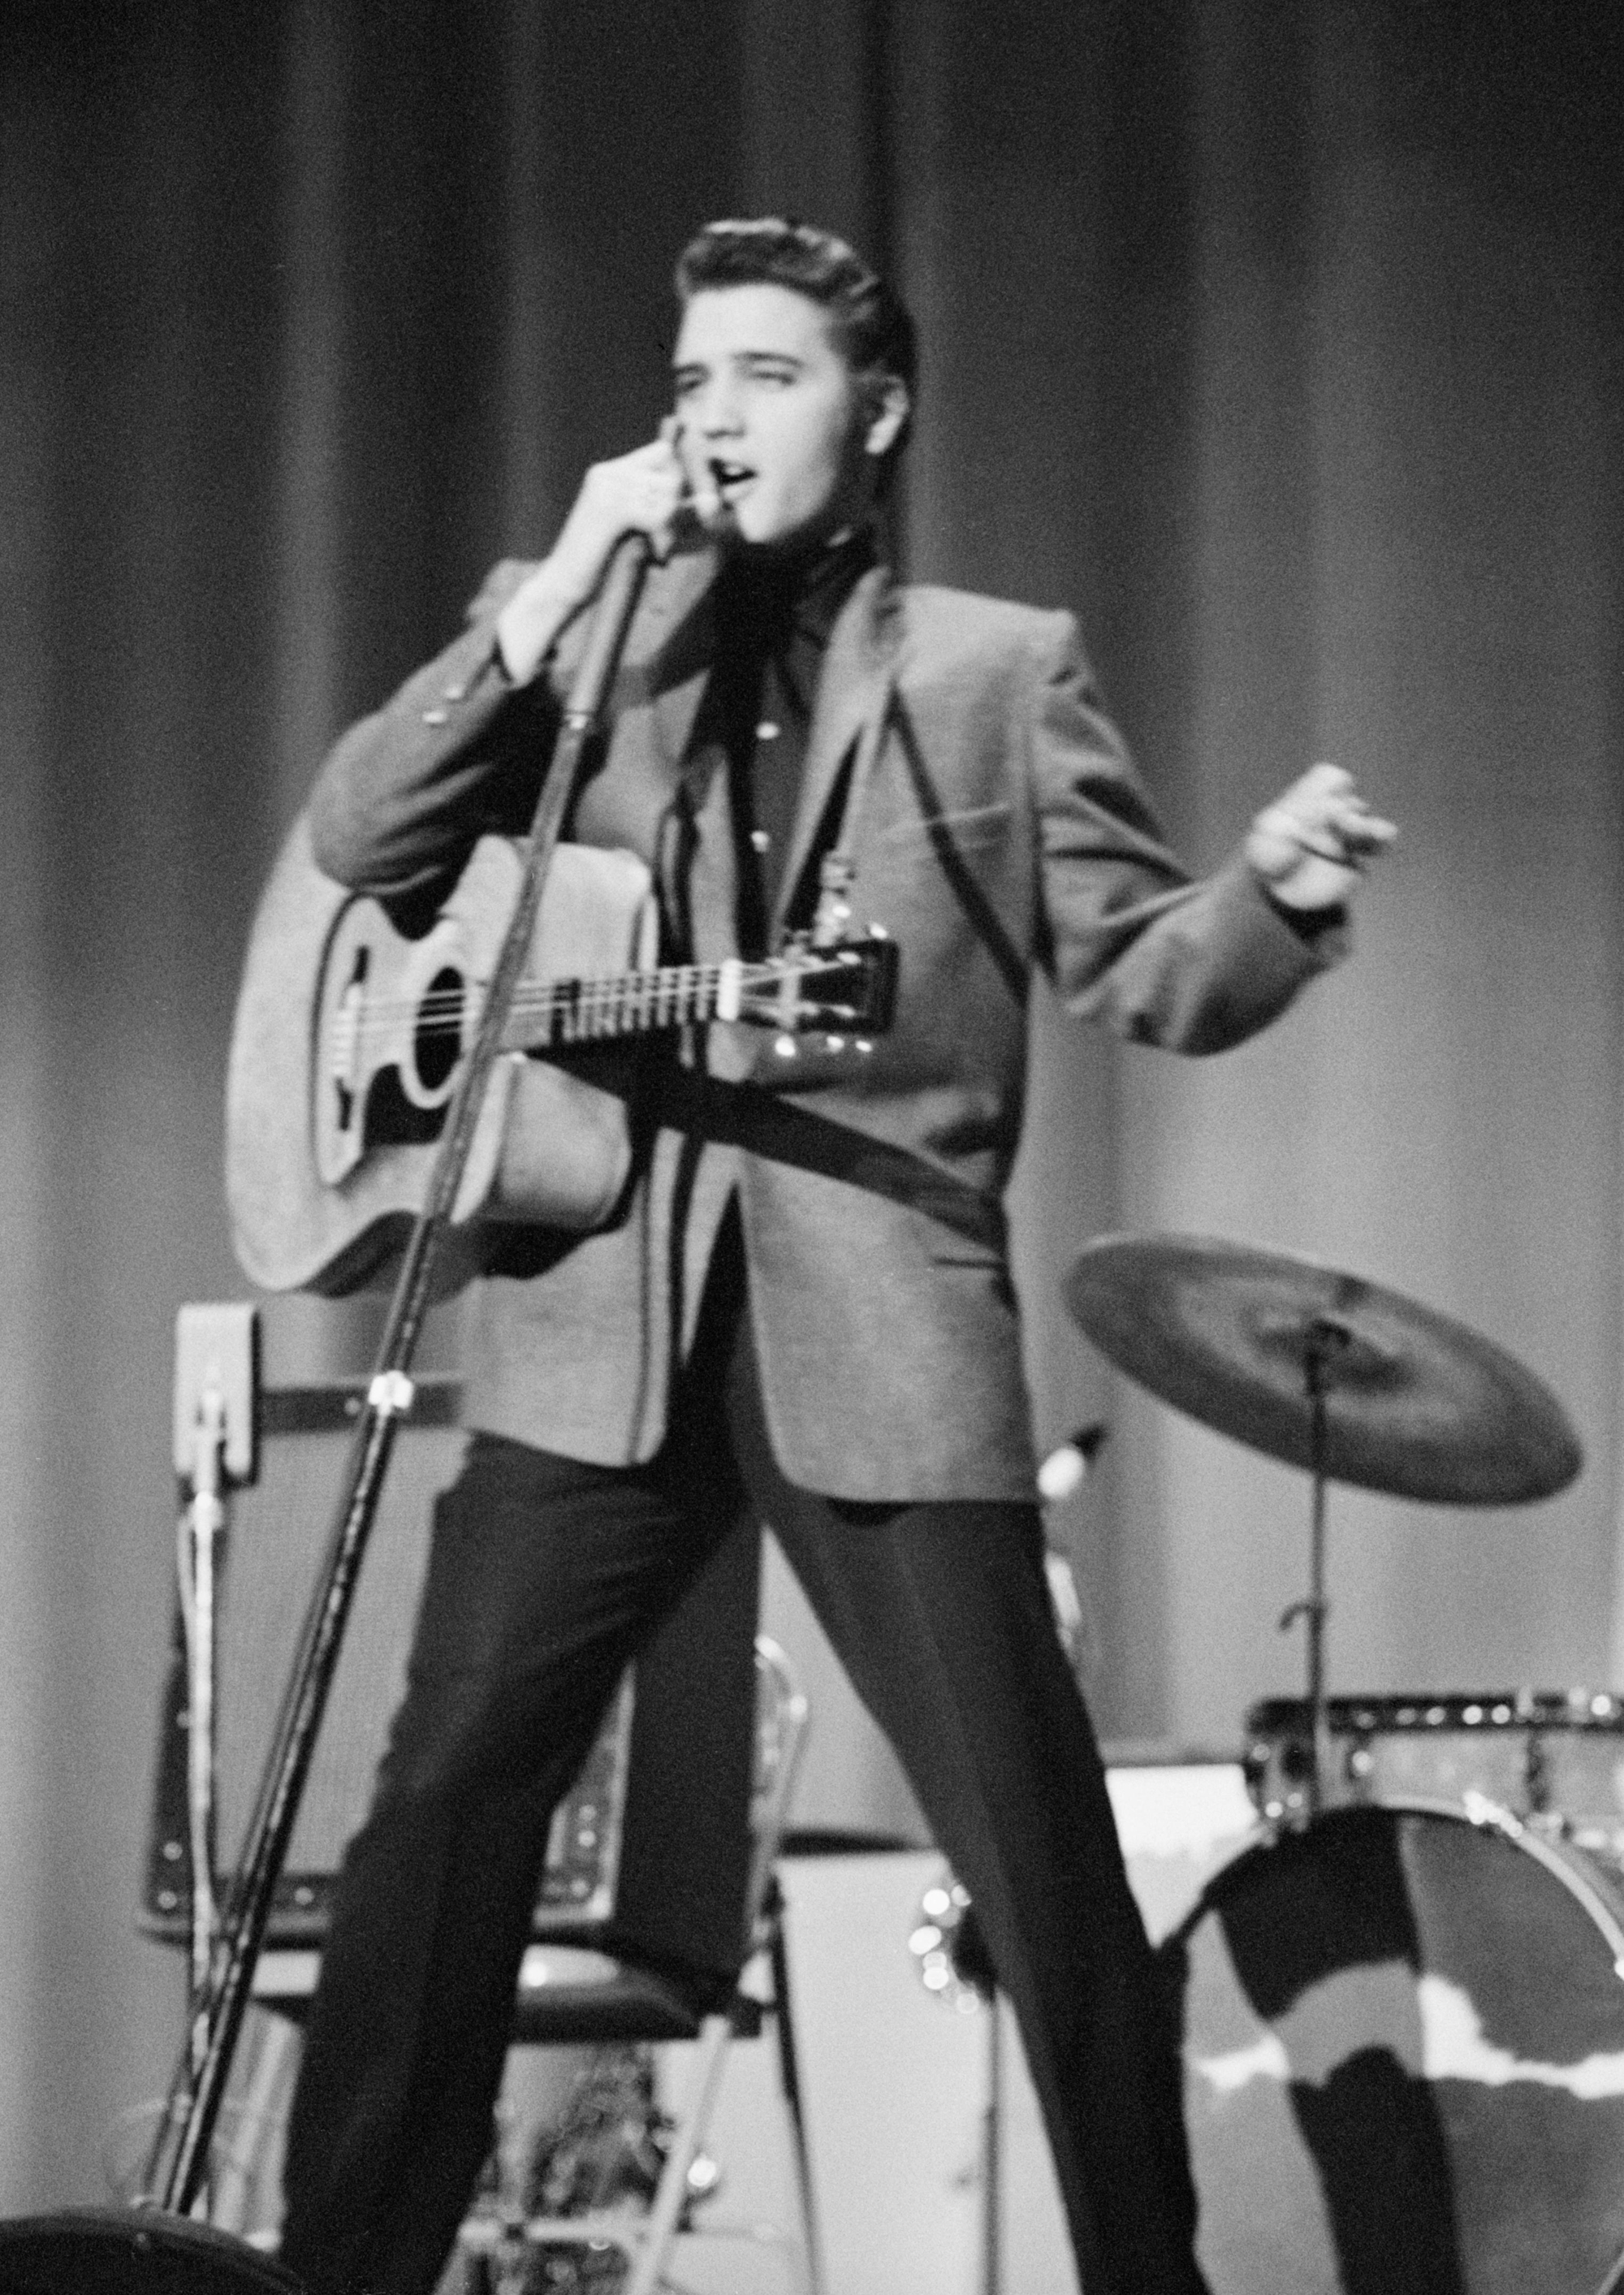 Elvis Presley, performing on stage, May 26, 1956